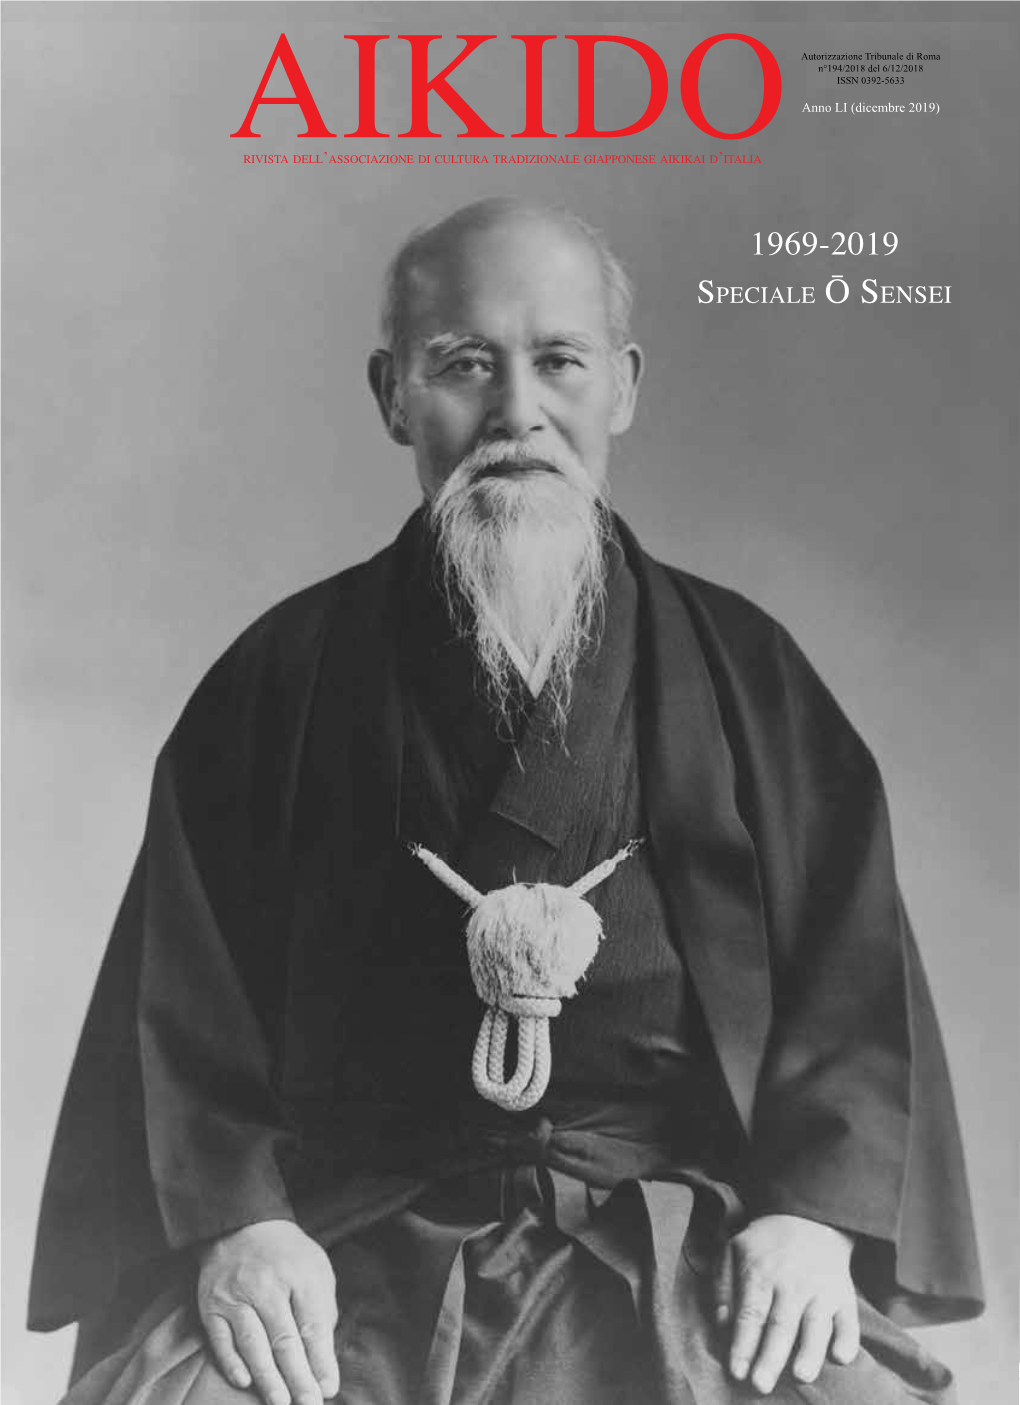 AIKIDO Rivista Dell’Associazione Di Cultura Tradizionale Giapponese Aikikai D’Italia 1969-2019 Speciale Ō Sensei